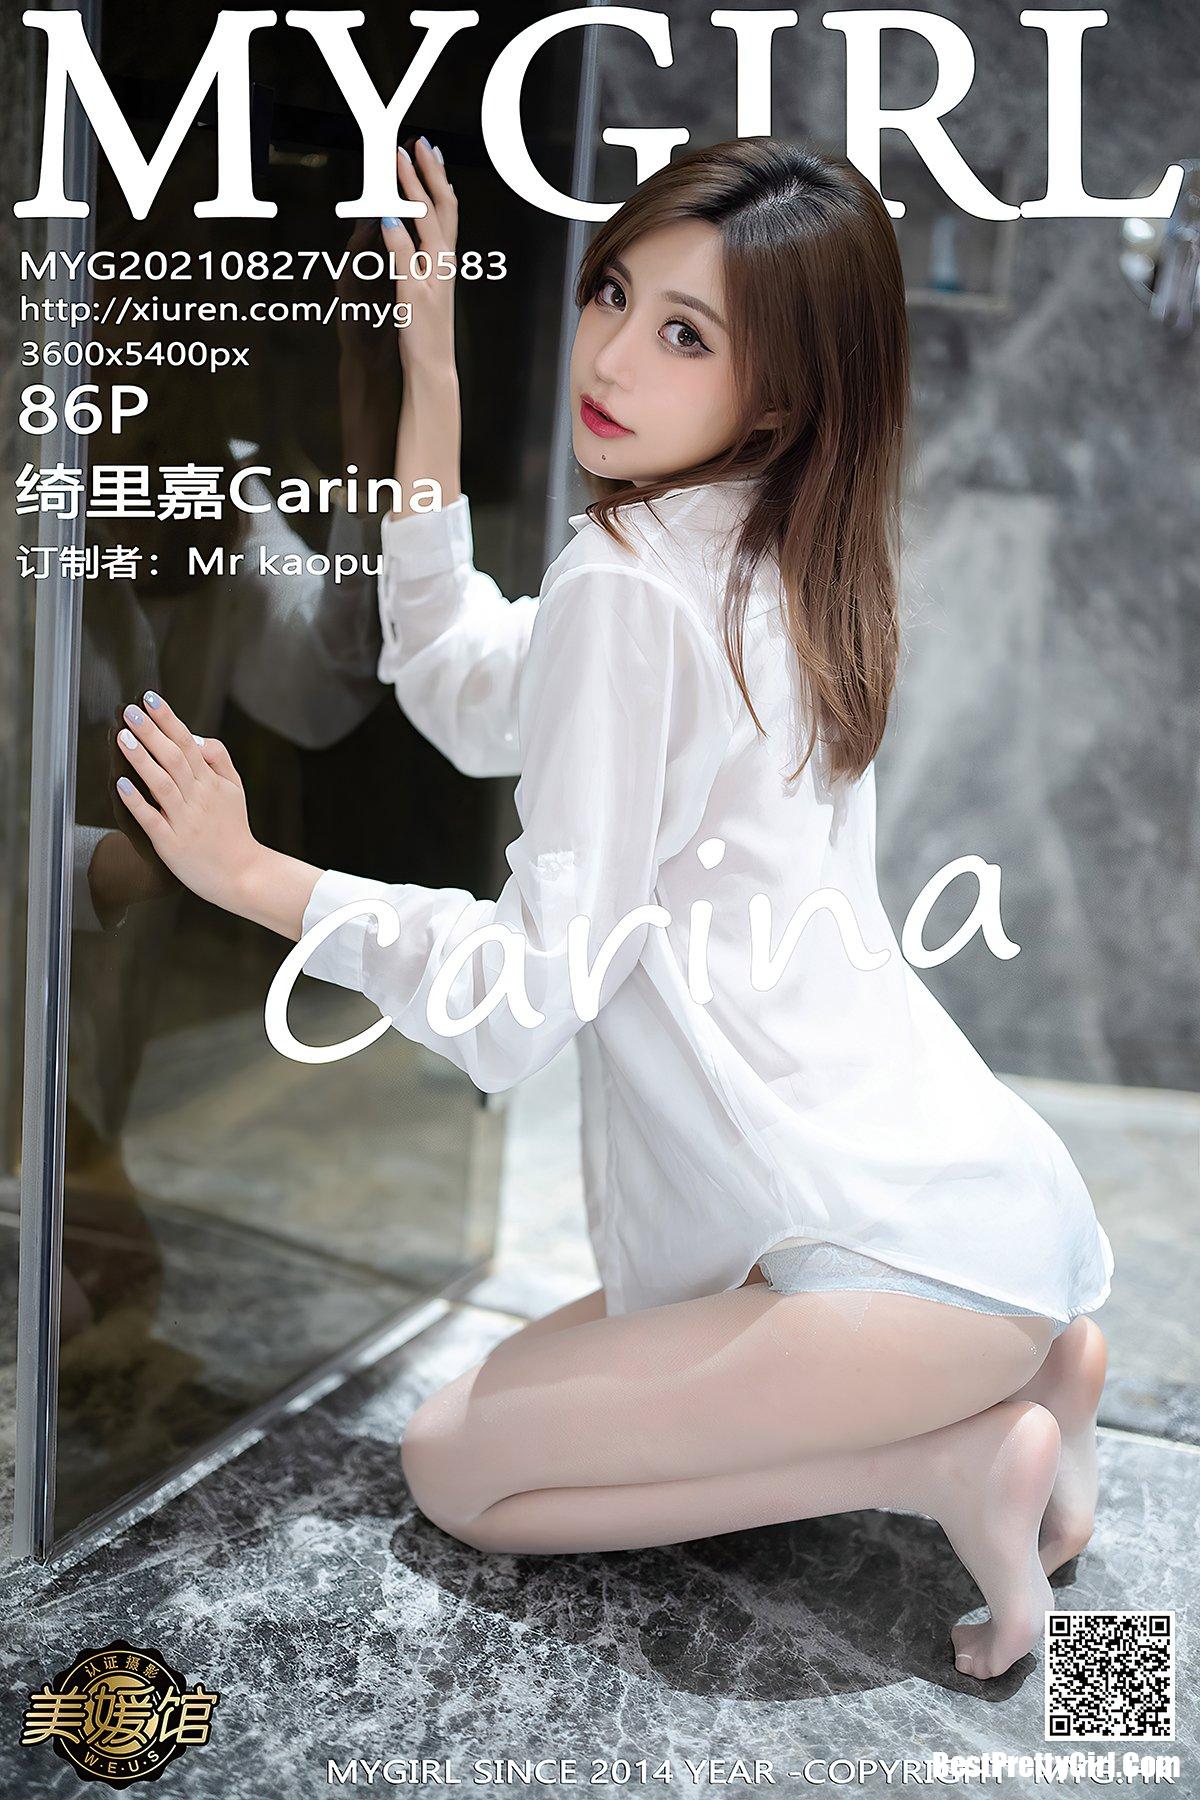 MyGirl美媛馆 Vol.583 Qi Li Jia Carina 0